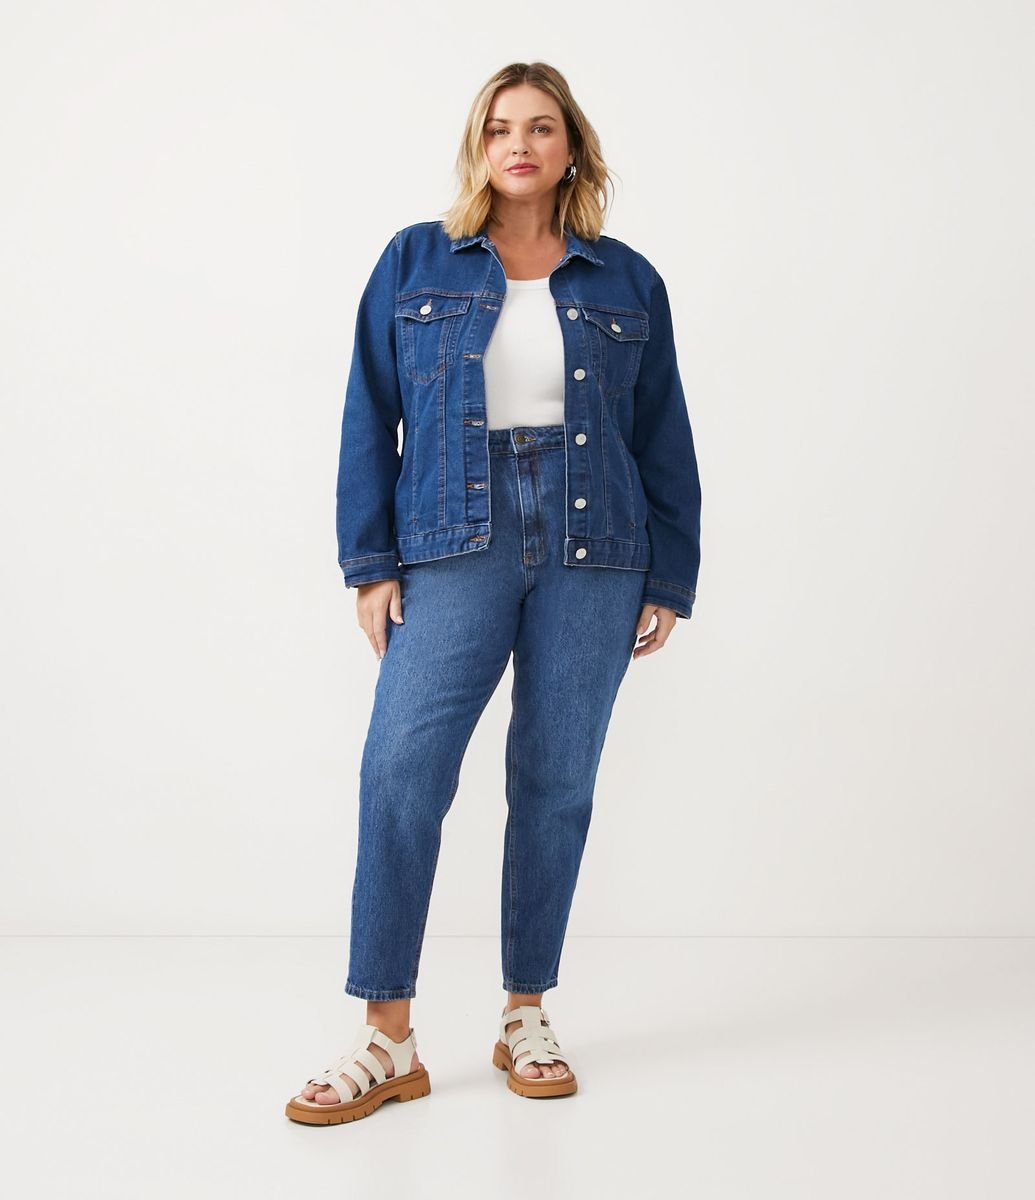 Ashua Curve & Plus Size apresenta nova coleção de Jeans Premium